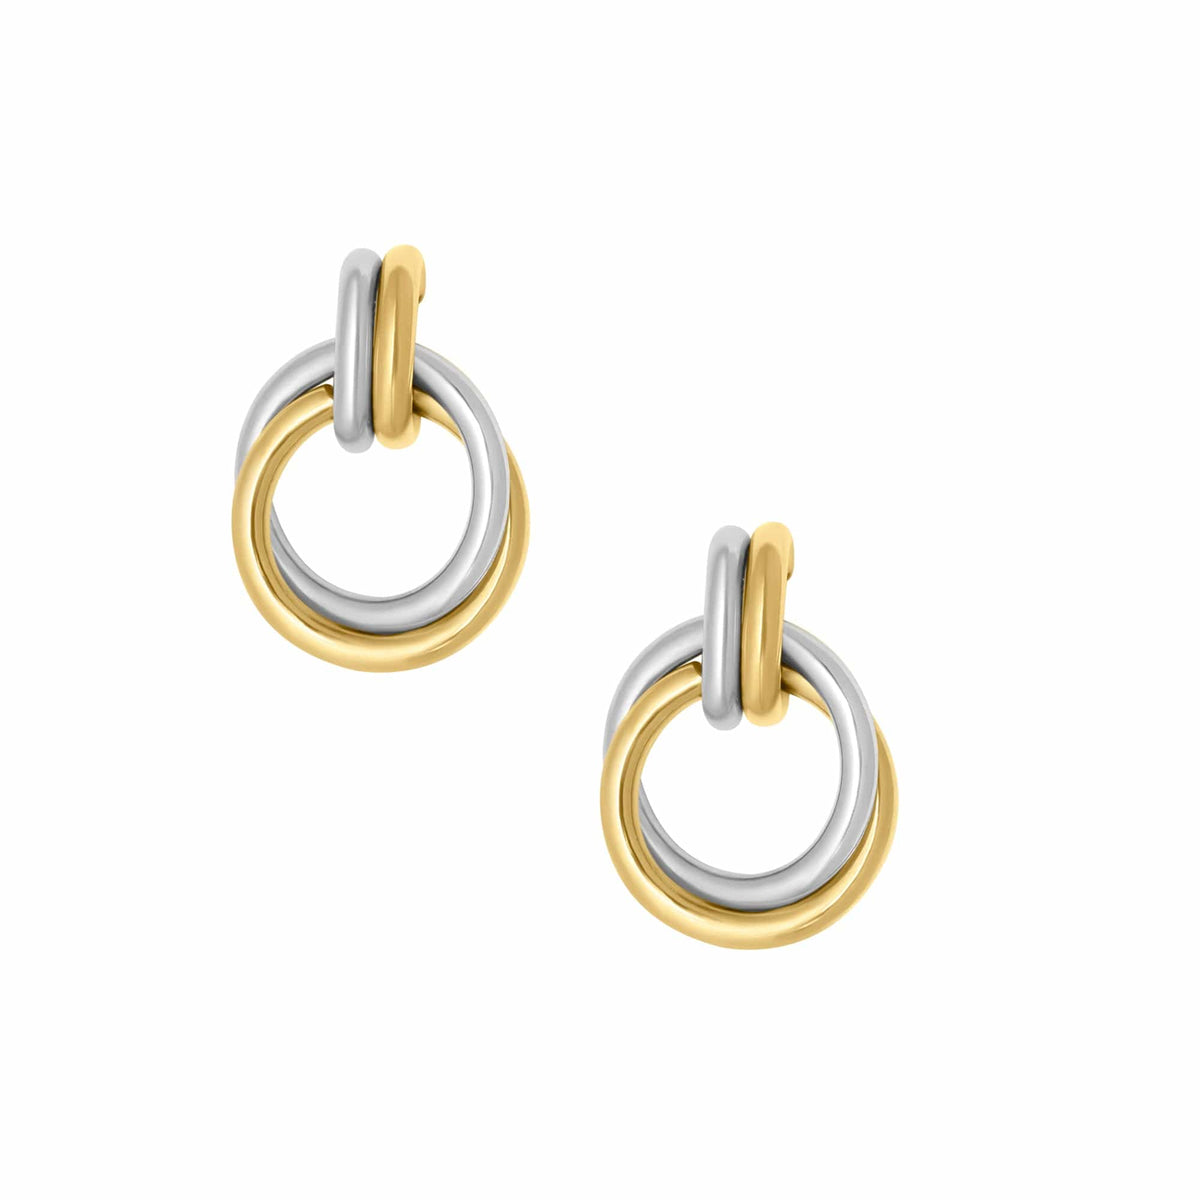 Bohomoon Stainless Steel Adelaide Stud Earrings